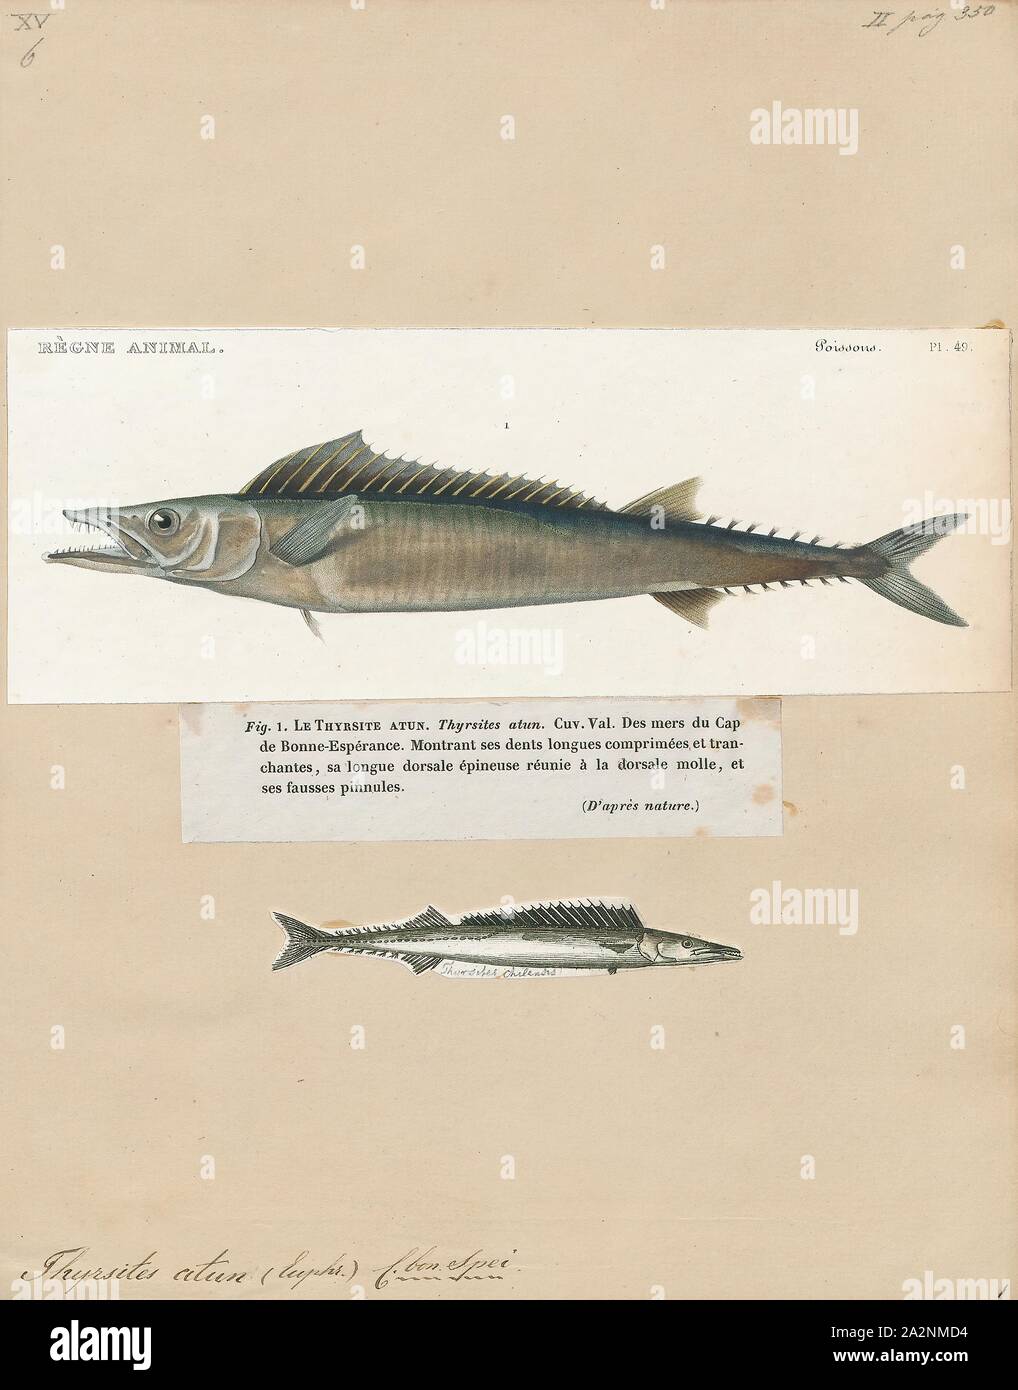 Thyrsites atun, Drucken, Thyrsites atun (Euphrasén, 1791), der snoek, ist eine lange, dünne Schlangenarten Makrele in den Meeren der südlichen Hemisphäre gefunden. Diese Fische können eine Länge von 200 cm (79 in) SL erreichen, obwohl die meisten nicht 75 Zentimeter (30 in) SL nicht überschreiten. Die maximale aufgezeichnete Gewicht für diese Art ist 6 kg (13 lb). Es ist sehr wichtig, die kommerzielle Fischerei und ist auch ein beliebtes Spiel Fisch. Es ist die derzeit einzige bekannte Vertreter seiner Gattung. Es ist auch in Australien als barracouta bekannt obwohl es nicht eng mit dem Barracuda zusammenhängt., 1700-1880 Stockfoto